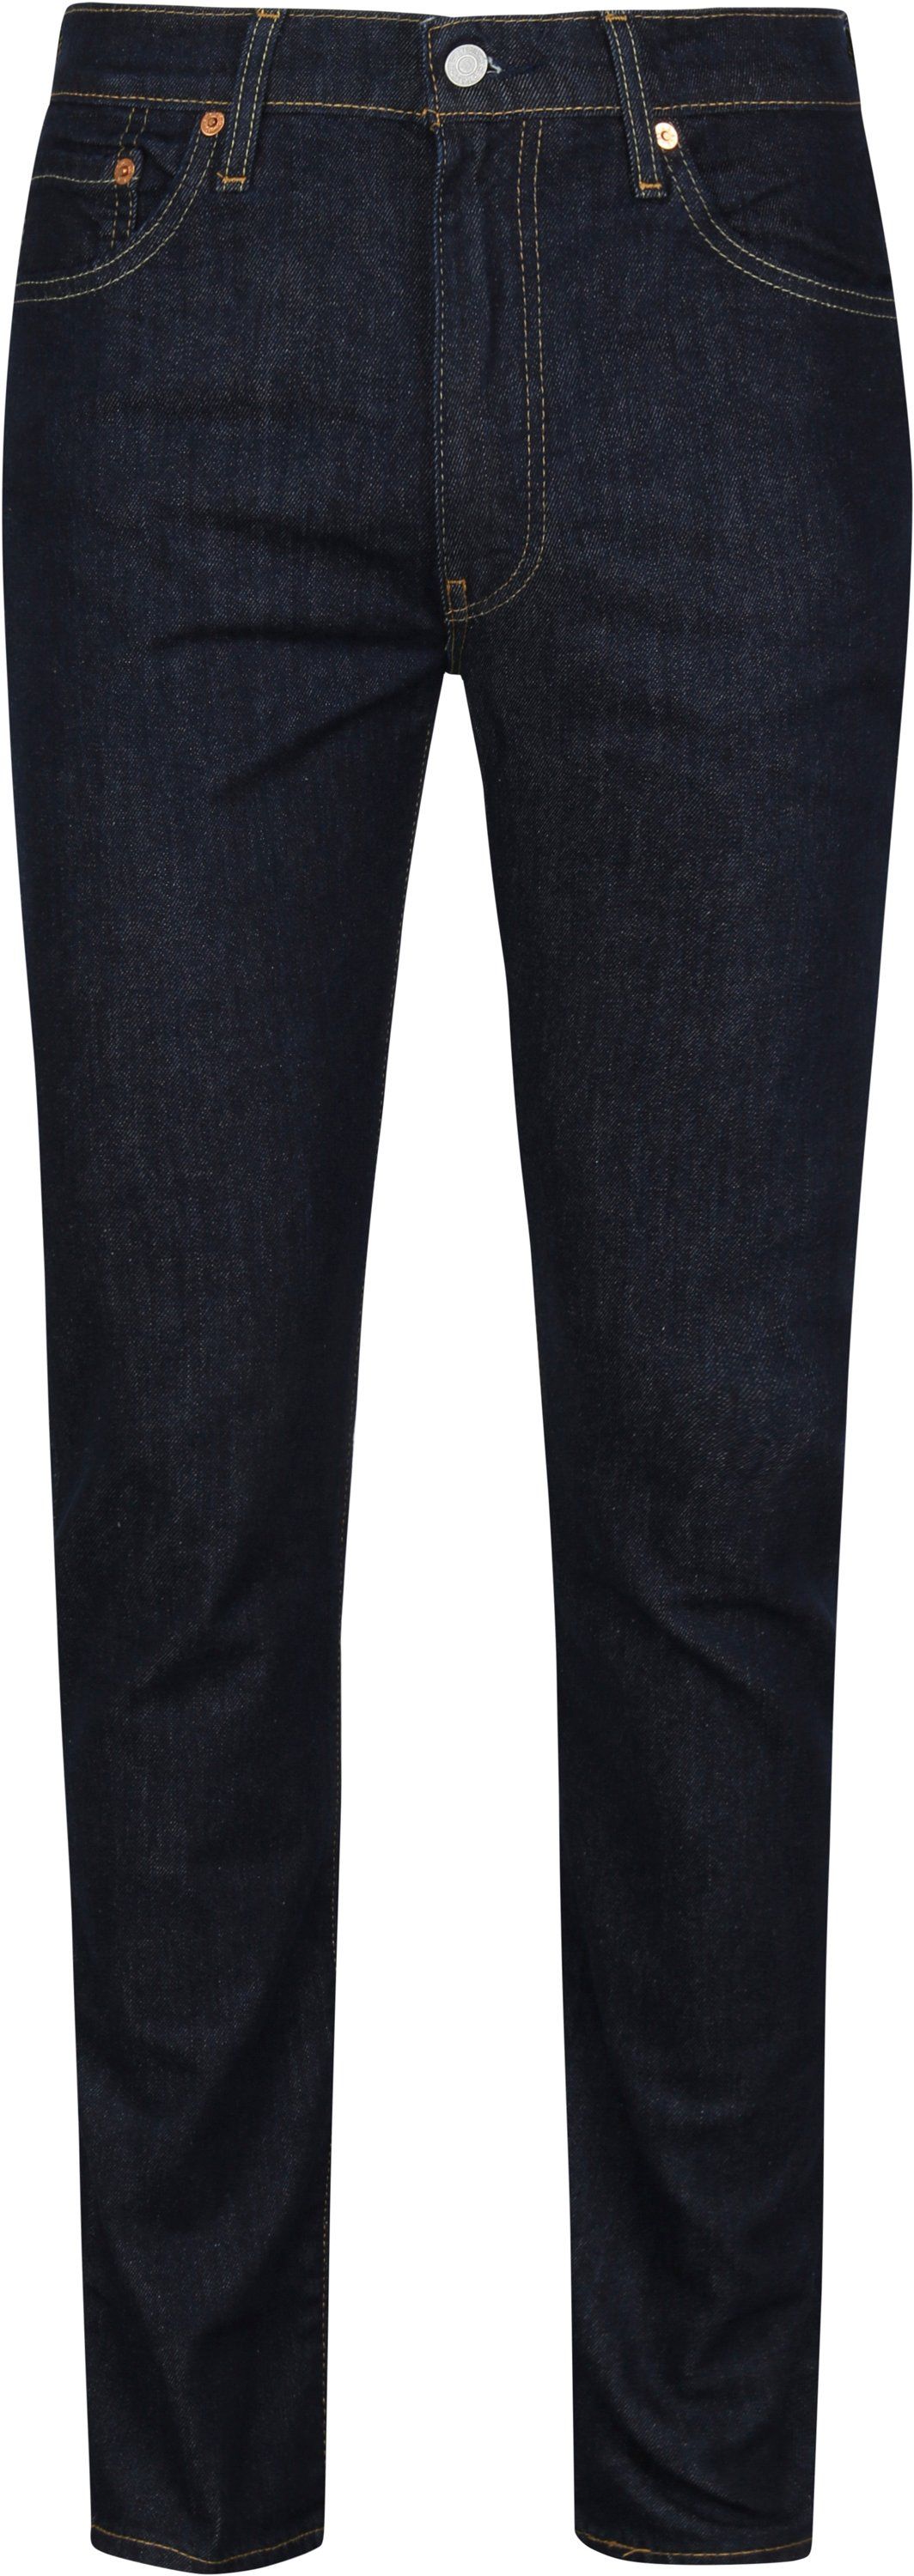 Levis - Levi's 511 denim jeans dark blue dark blue size w 30